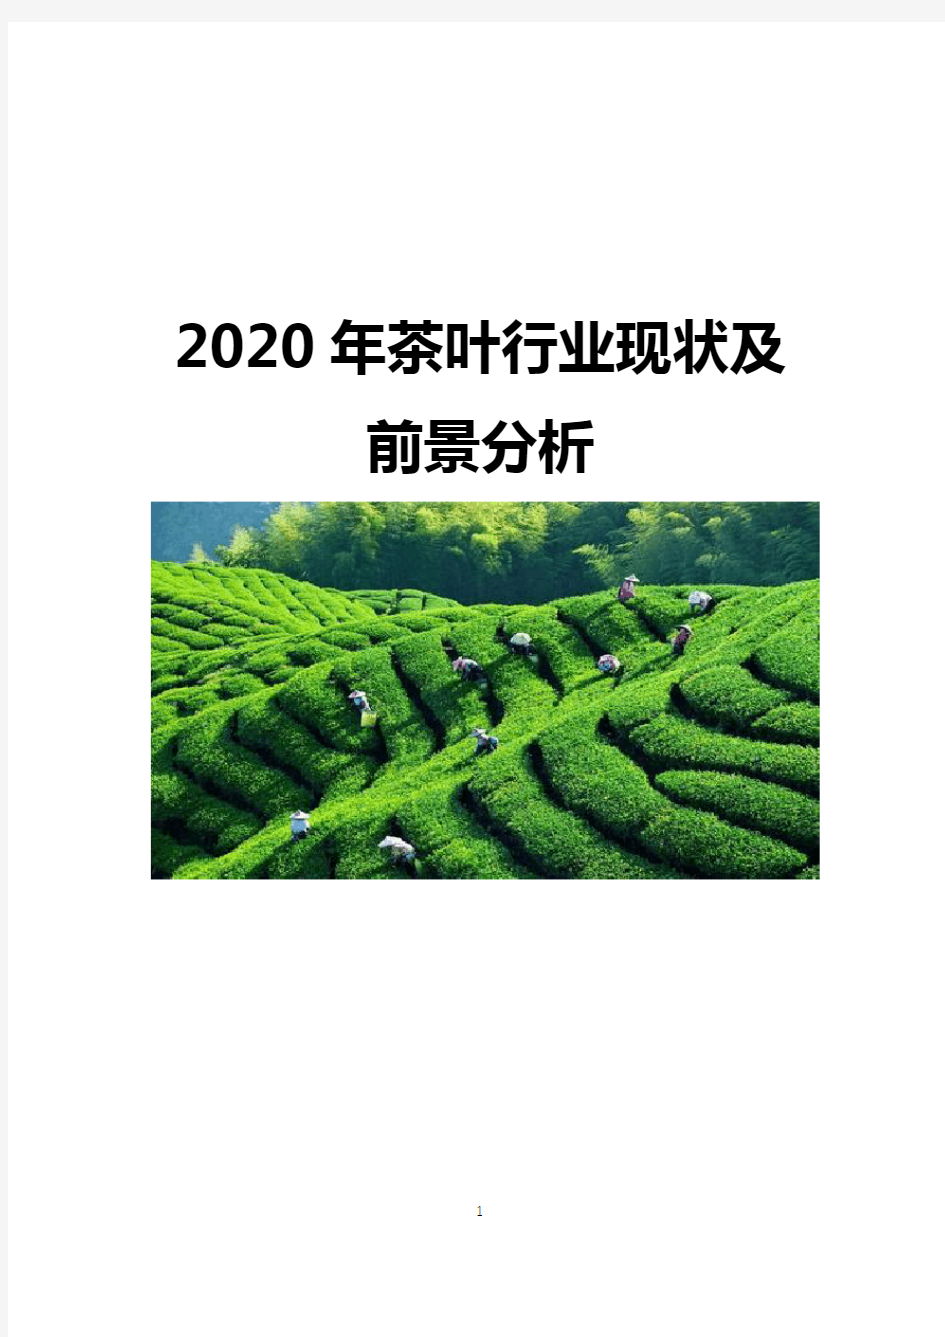 2020年茶叶行业现状及前景分析